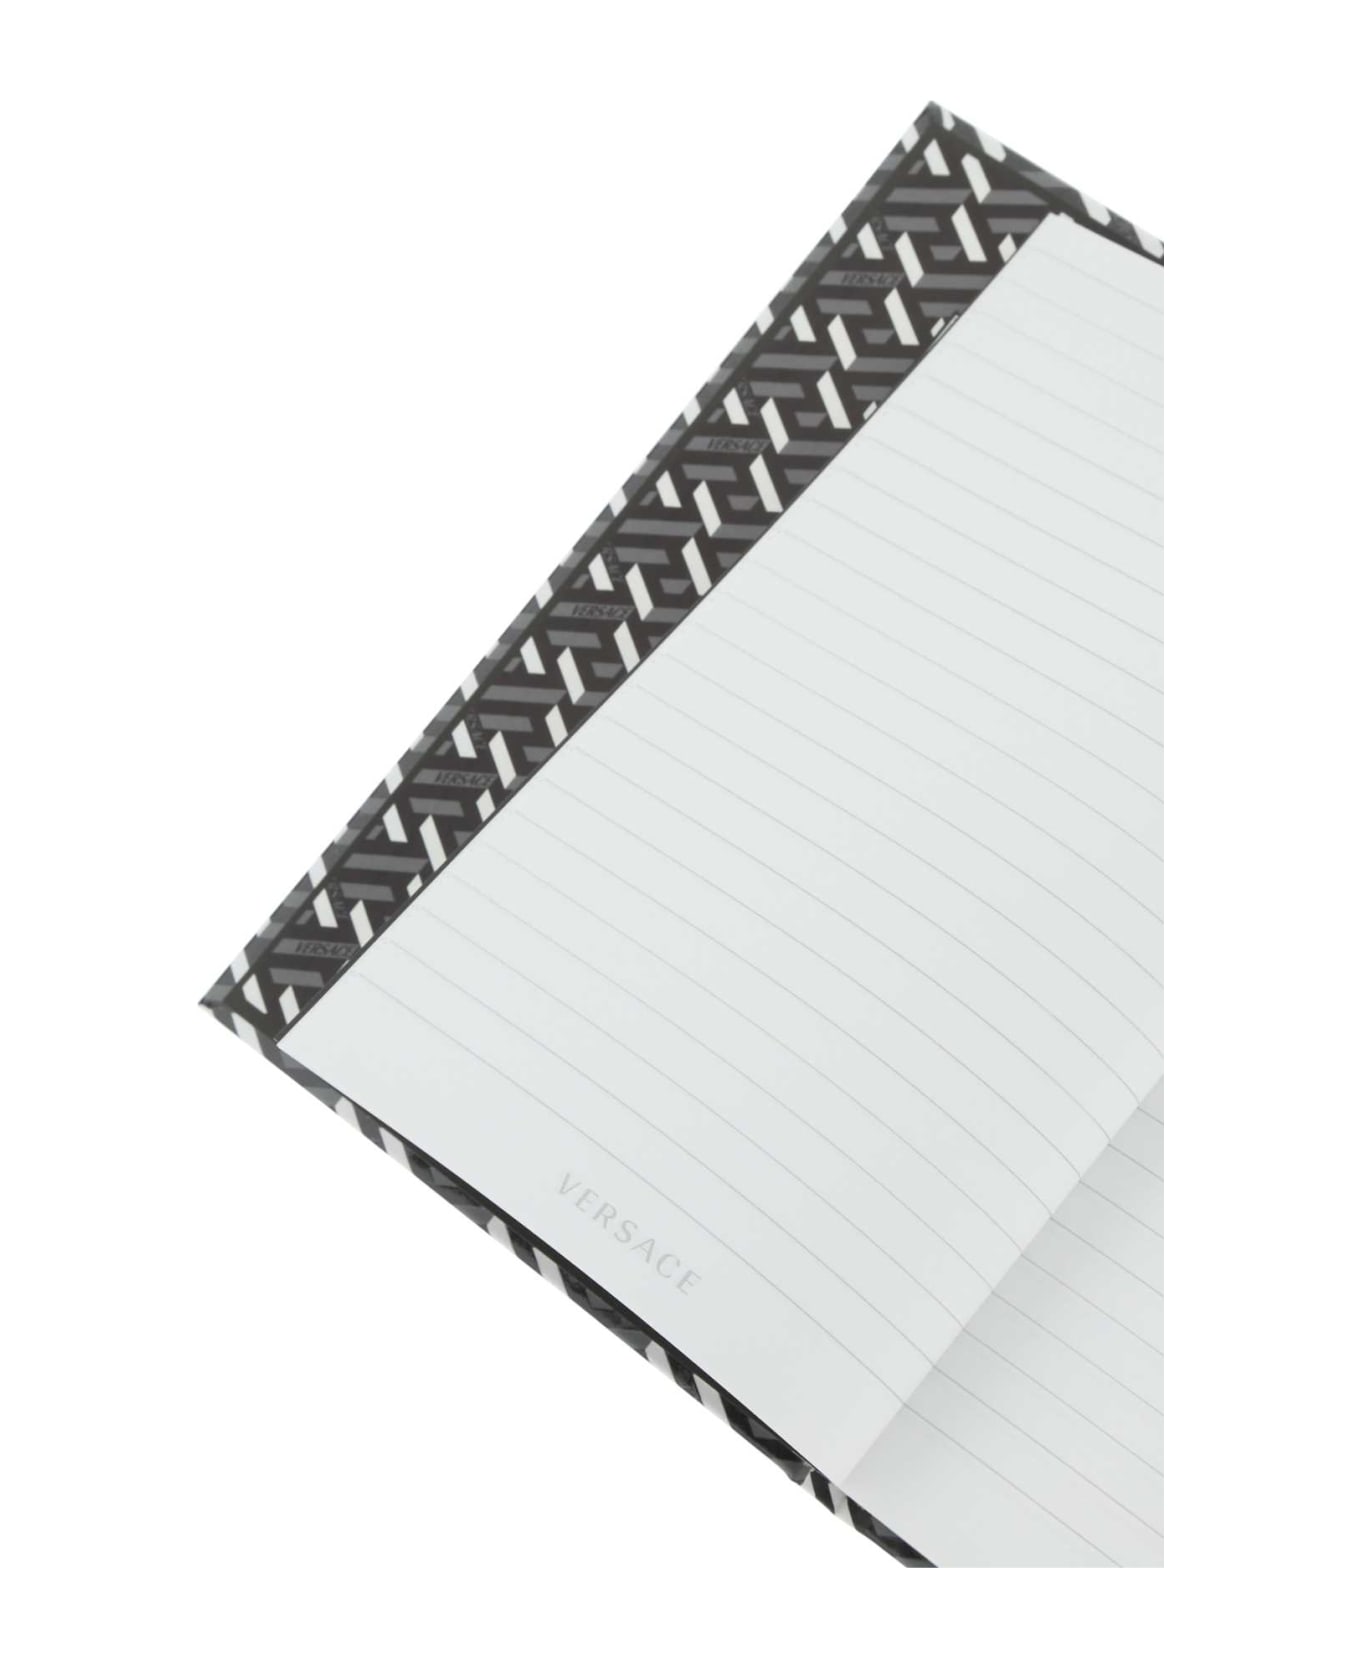 Versace Printed Cardboard Notebook - 5B820